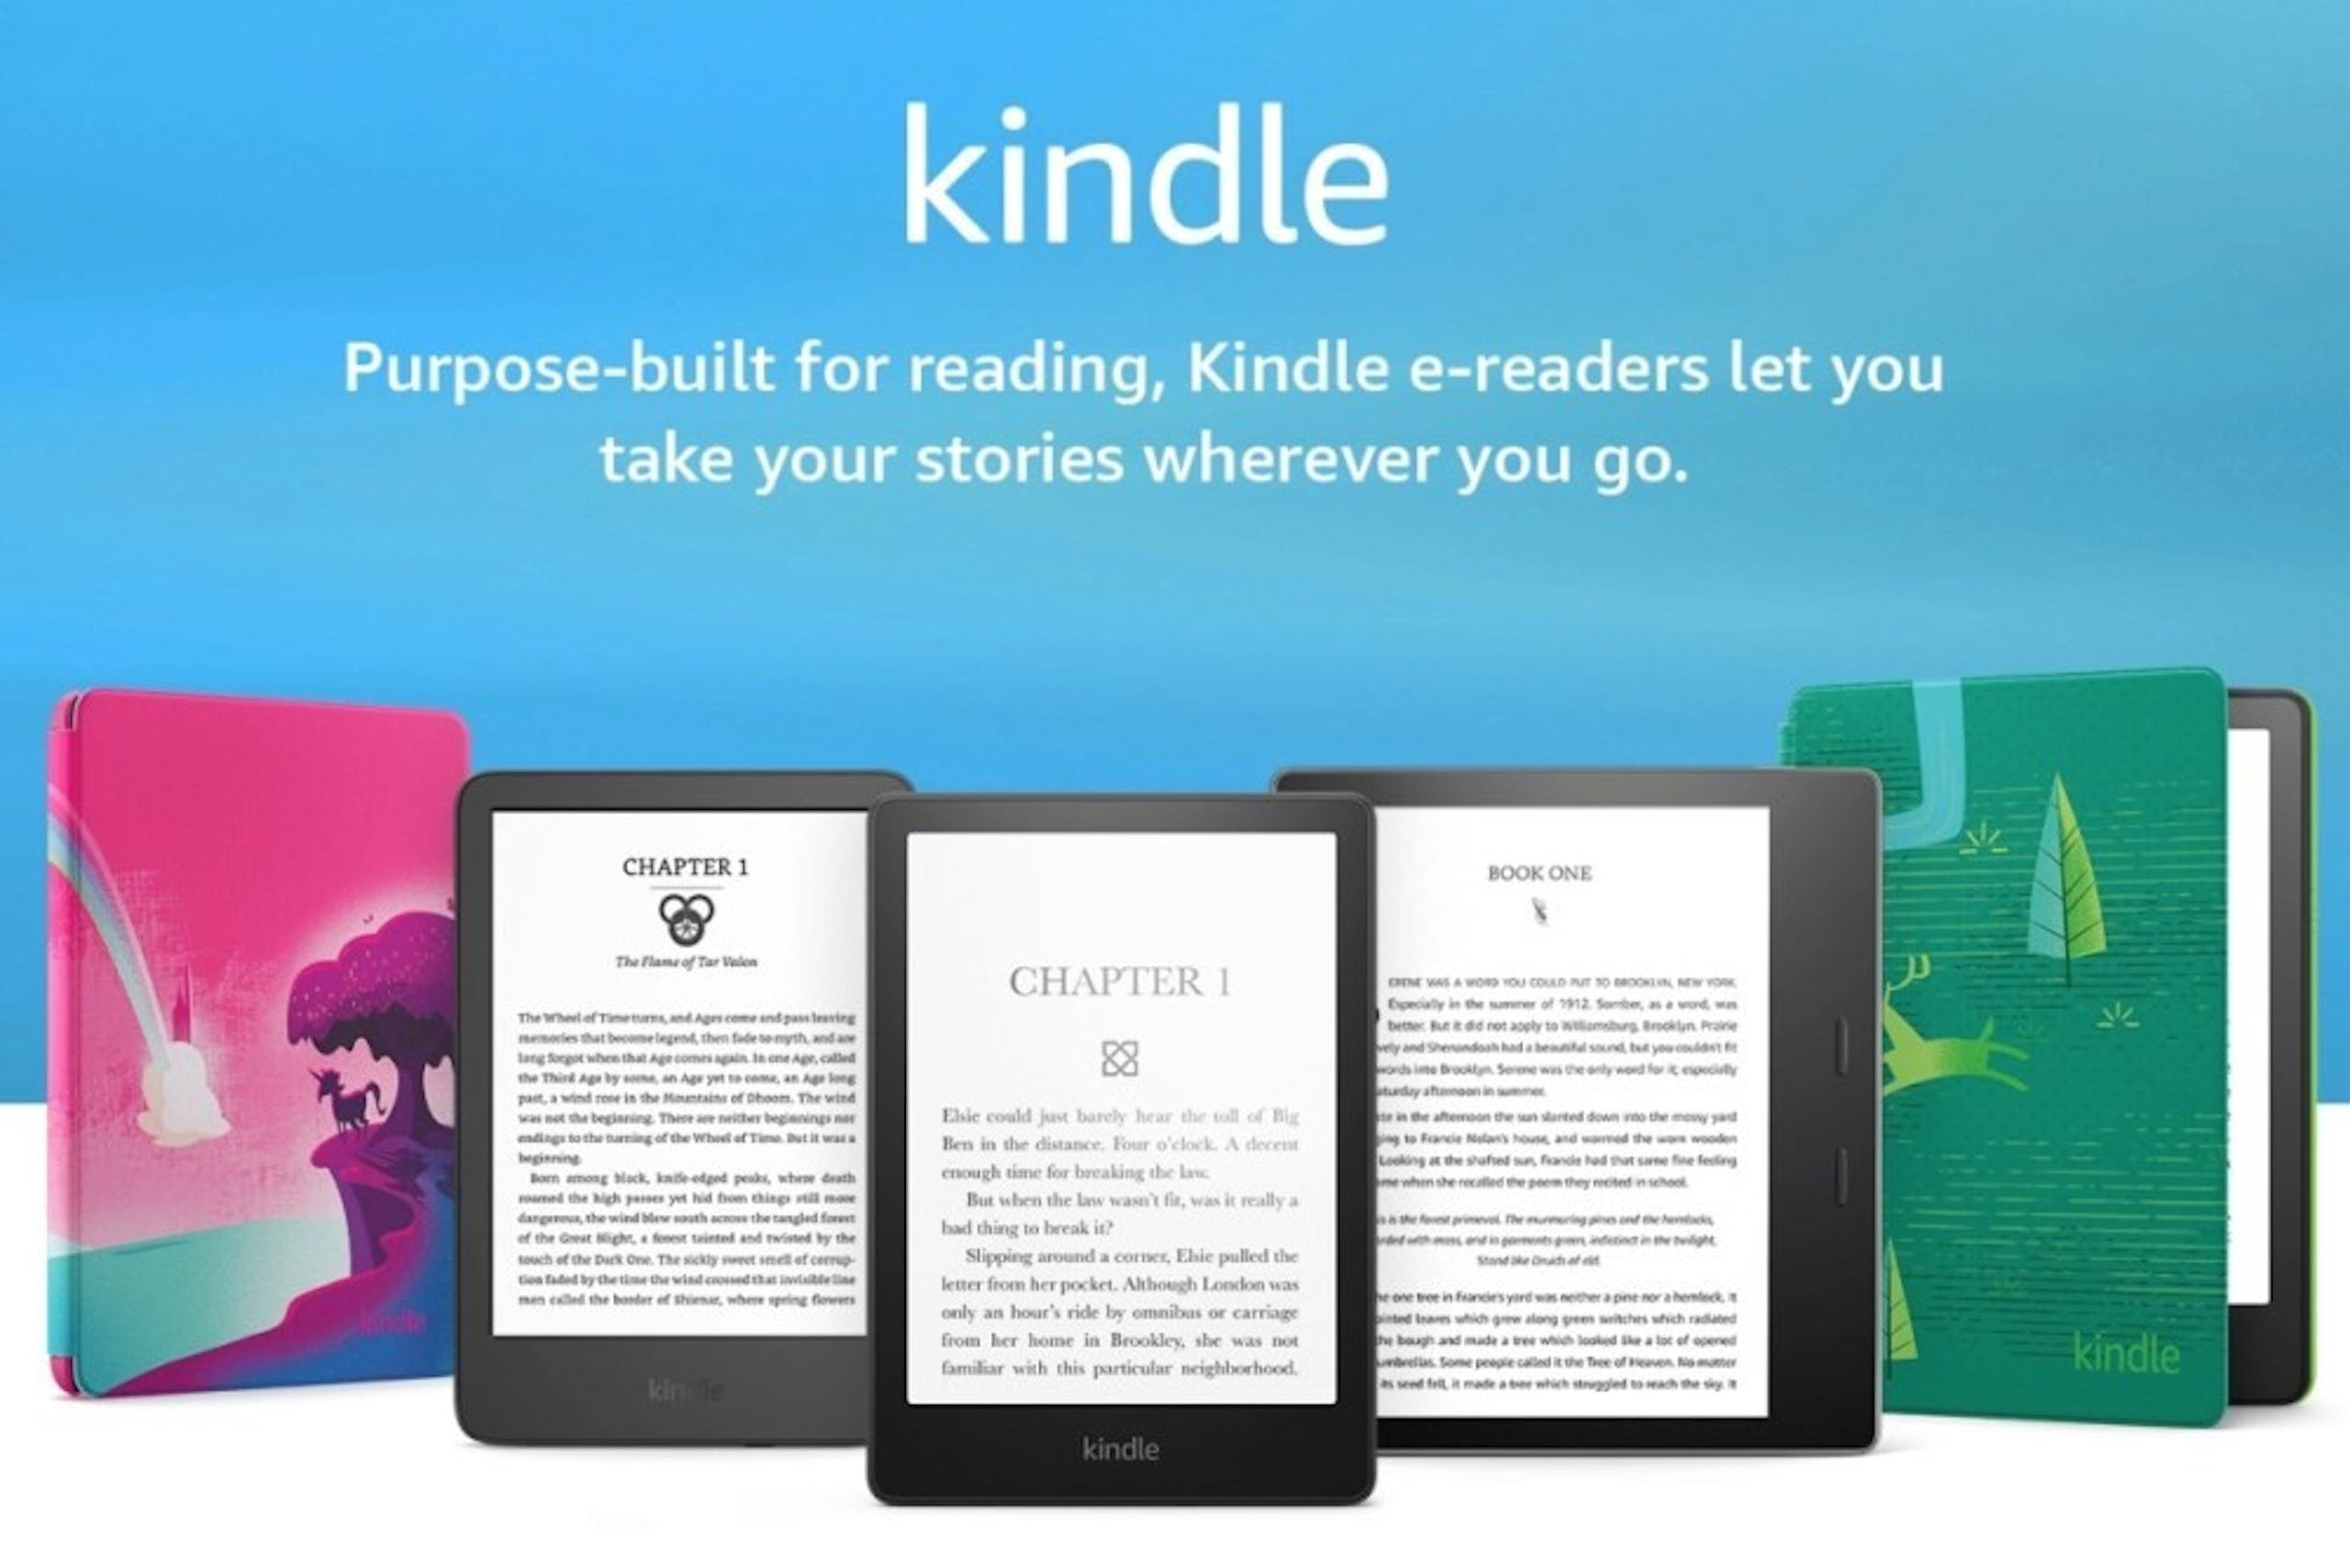 照片中提到了kindle、Purpose-built for reading, Kindle e-readers let you、take your stories wherever you go.，包含了點燃、亞馬遜網、亞馬遜Kindle、電子書、電子版